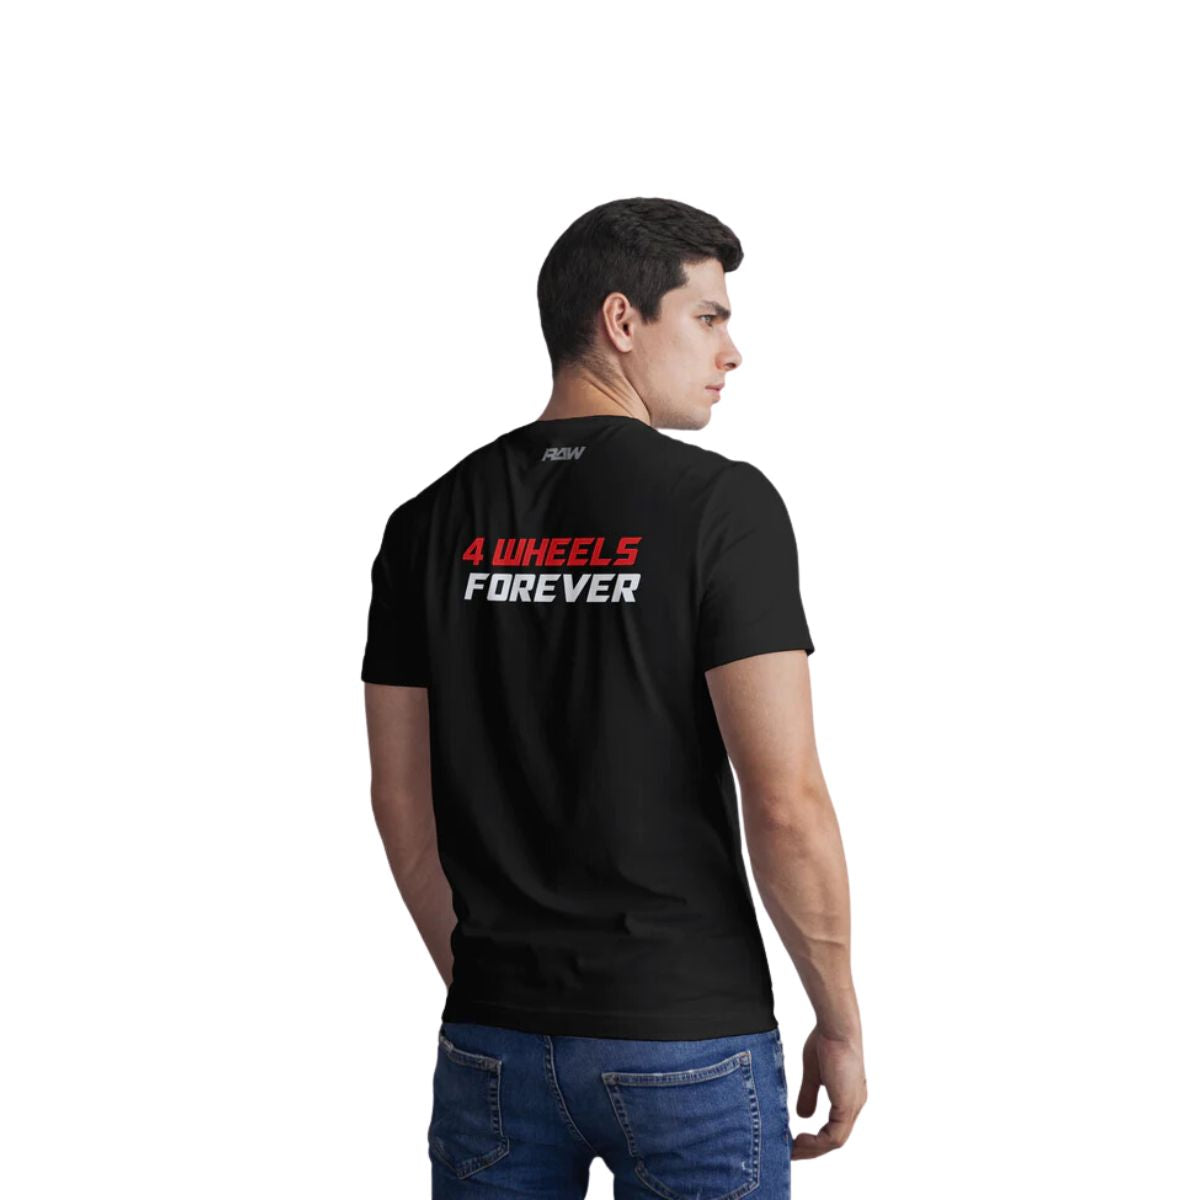 4 Wheels Forever T-Shirt - Unisex 3